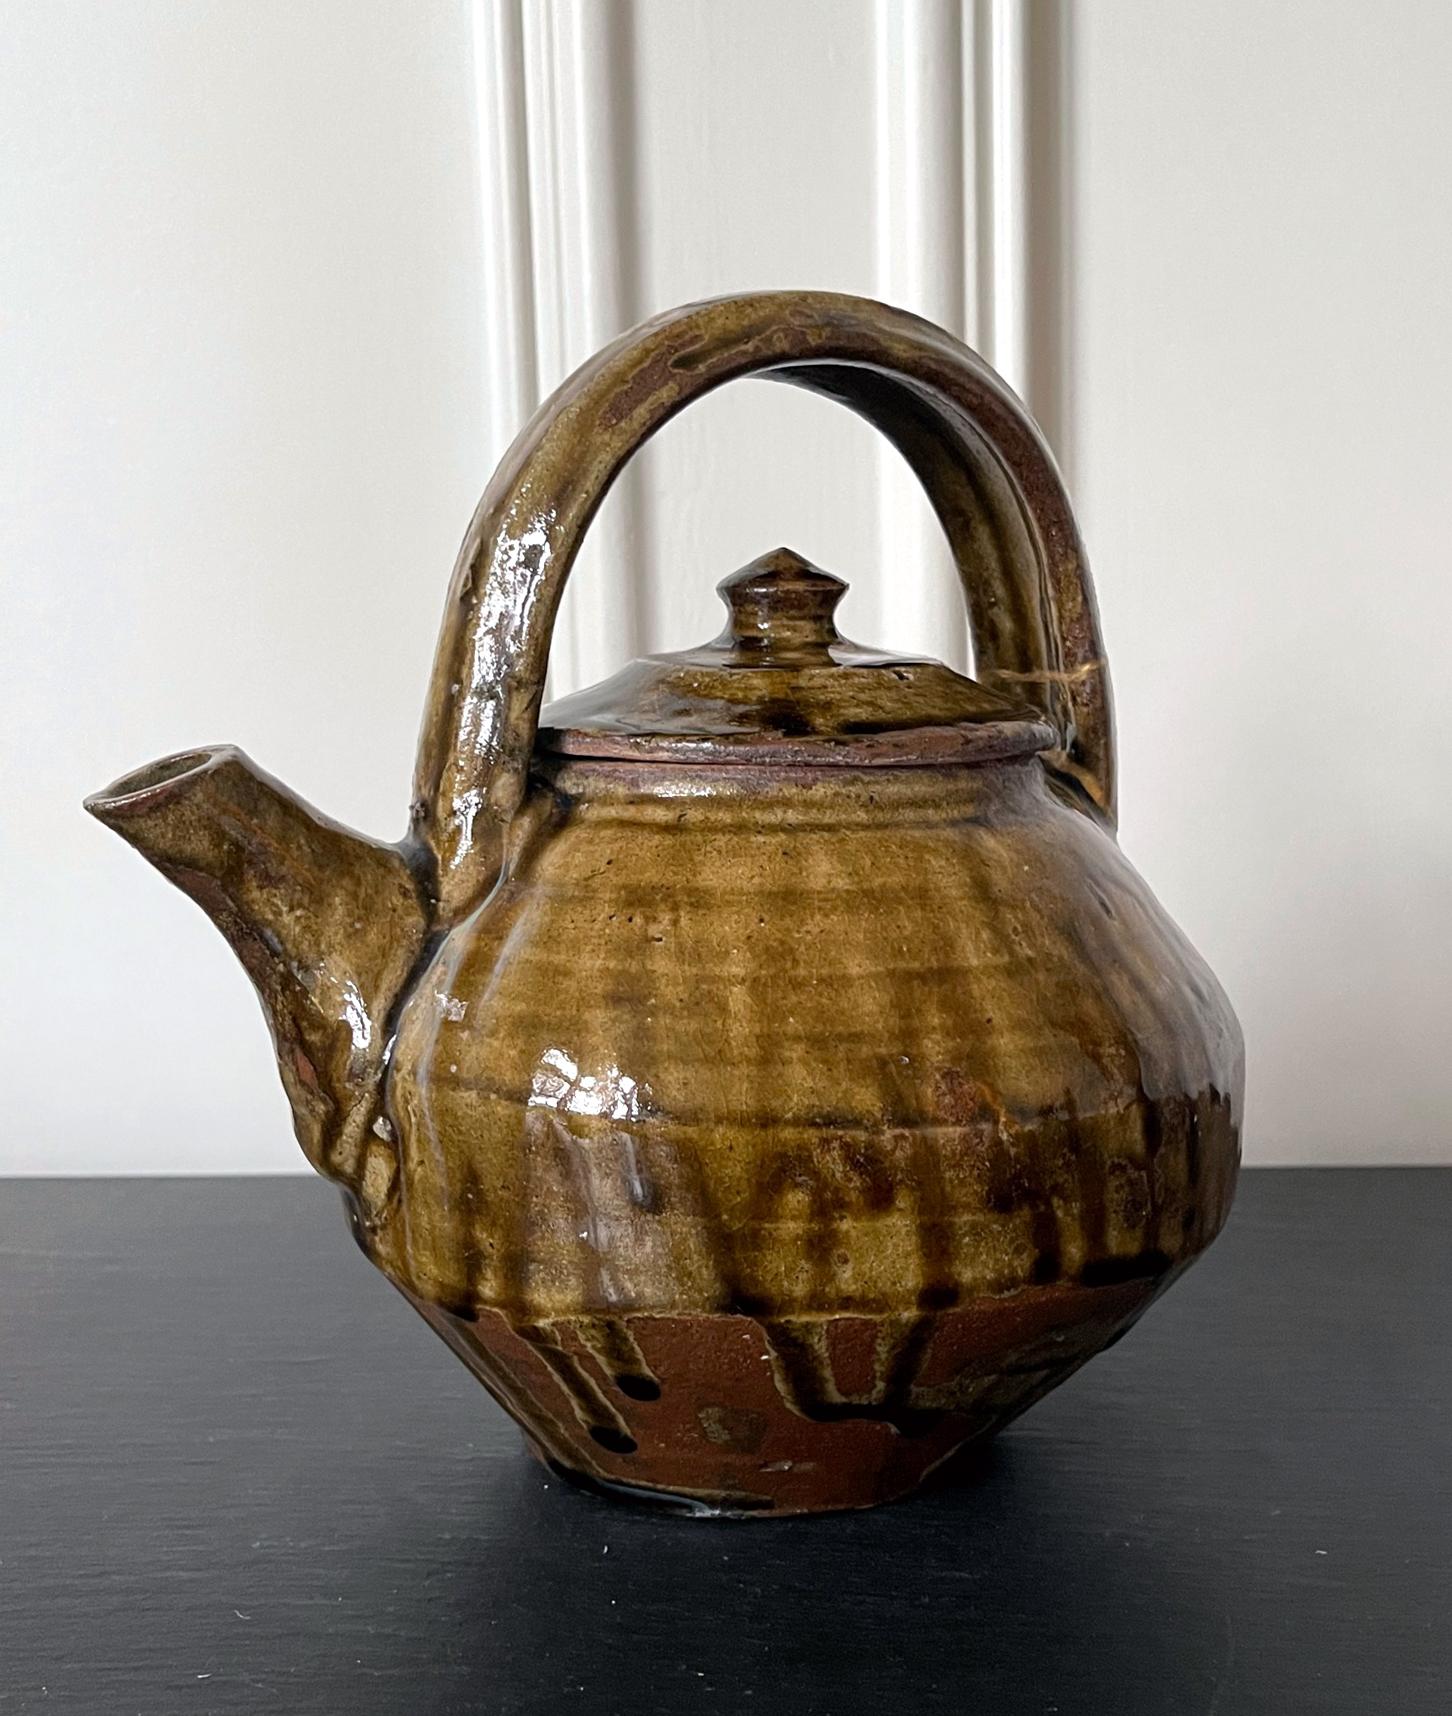 Japanische Steingut-Teekanne von Hamada Shoji (japanisch 1894-1978), ca. 1960-80er Jahre. Die Teekanne hat eine klassische Form und einen starken Mingei-Stil (Volkskunst). Sie war mit einer dicken Nuka-Glasur (Asche aus Reisspelzen) überzogen, wobei